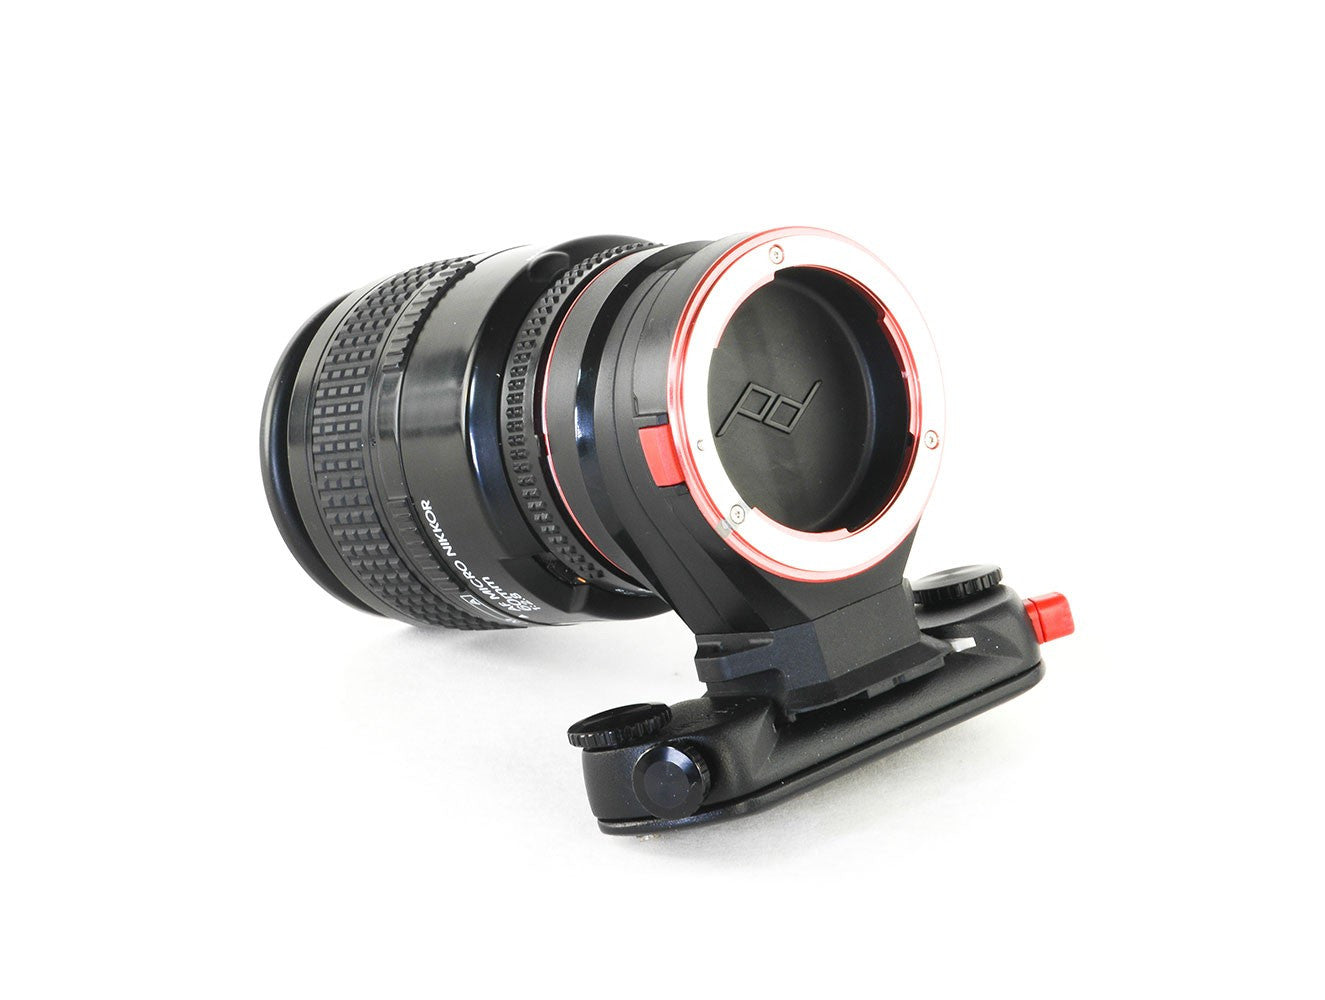 Peak Design Capture Lens Clip for Canon Lenses, bags accessories, Peak Design - Pictureline  - 4